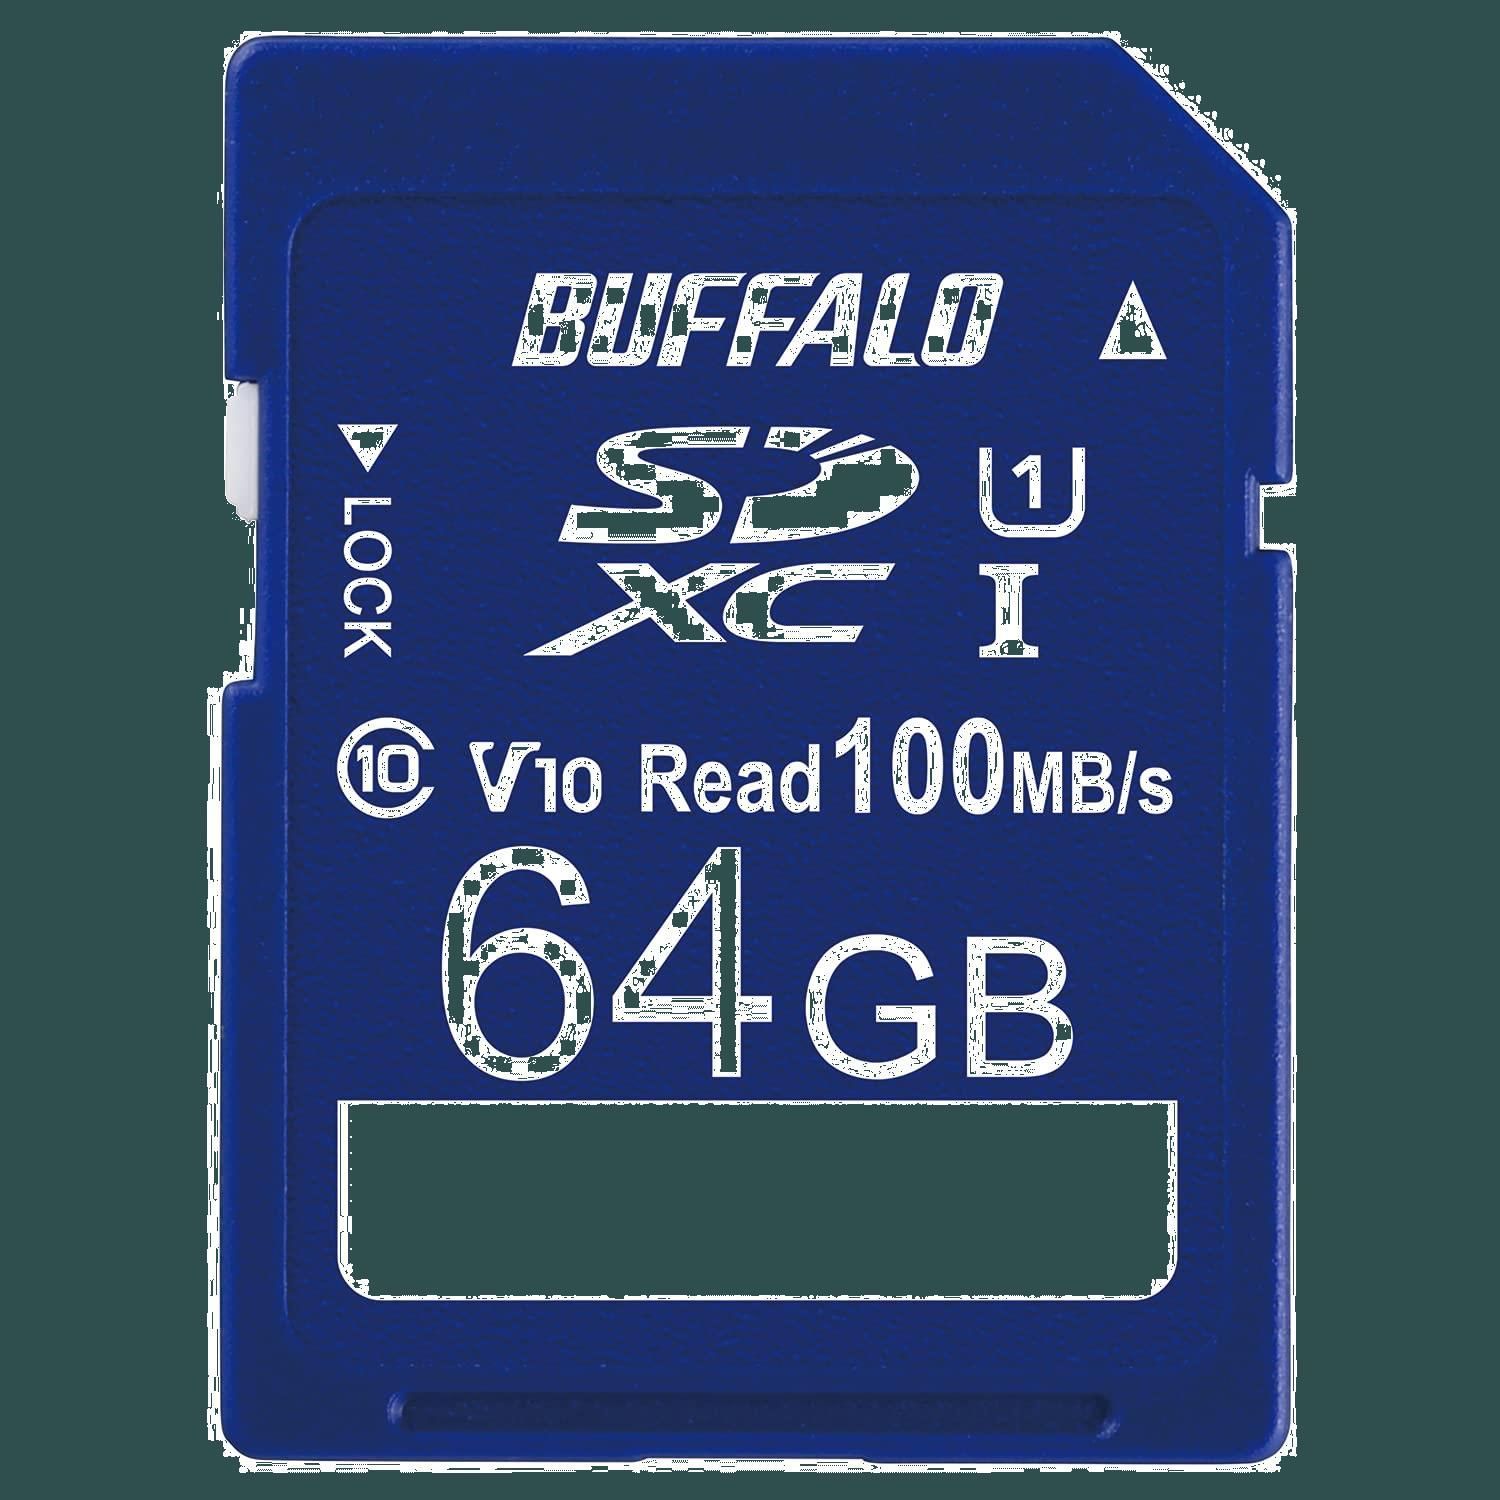 バッファロー SDカード 16GB 100MB s UHS-1 スピードクラス1 VideoSpeedClass10 IPX7 Full H